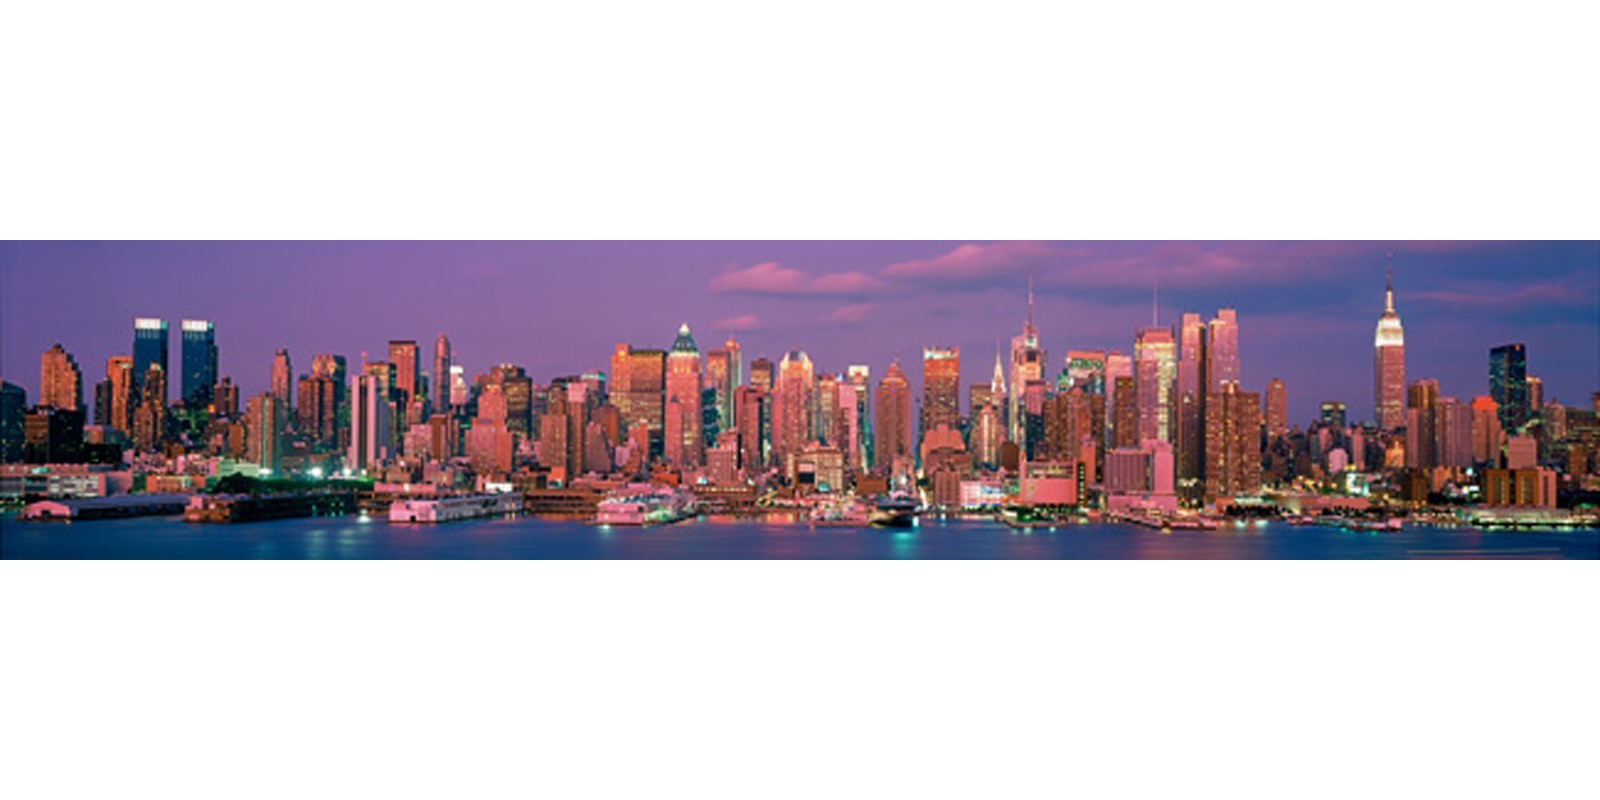 Richard Berenholtz - Manhattan Skyline, NYC